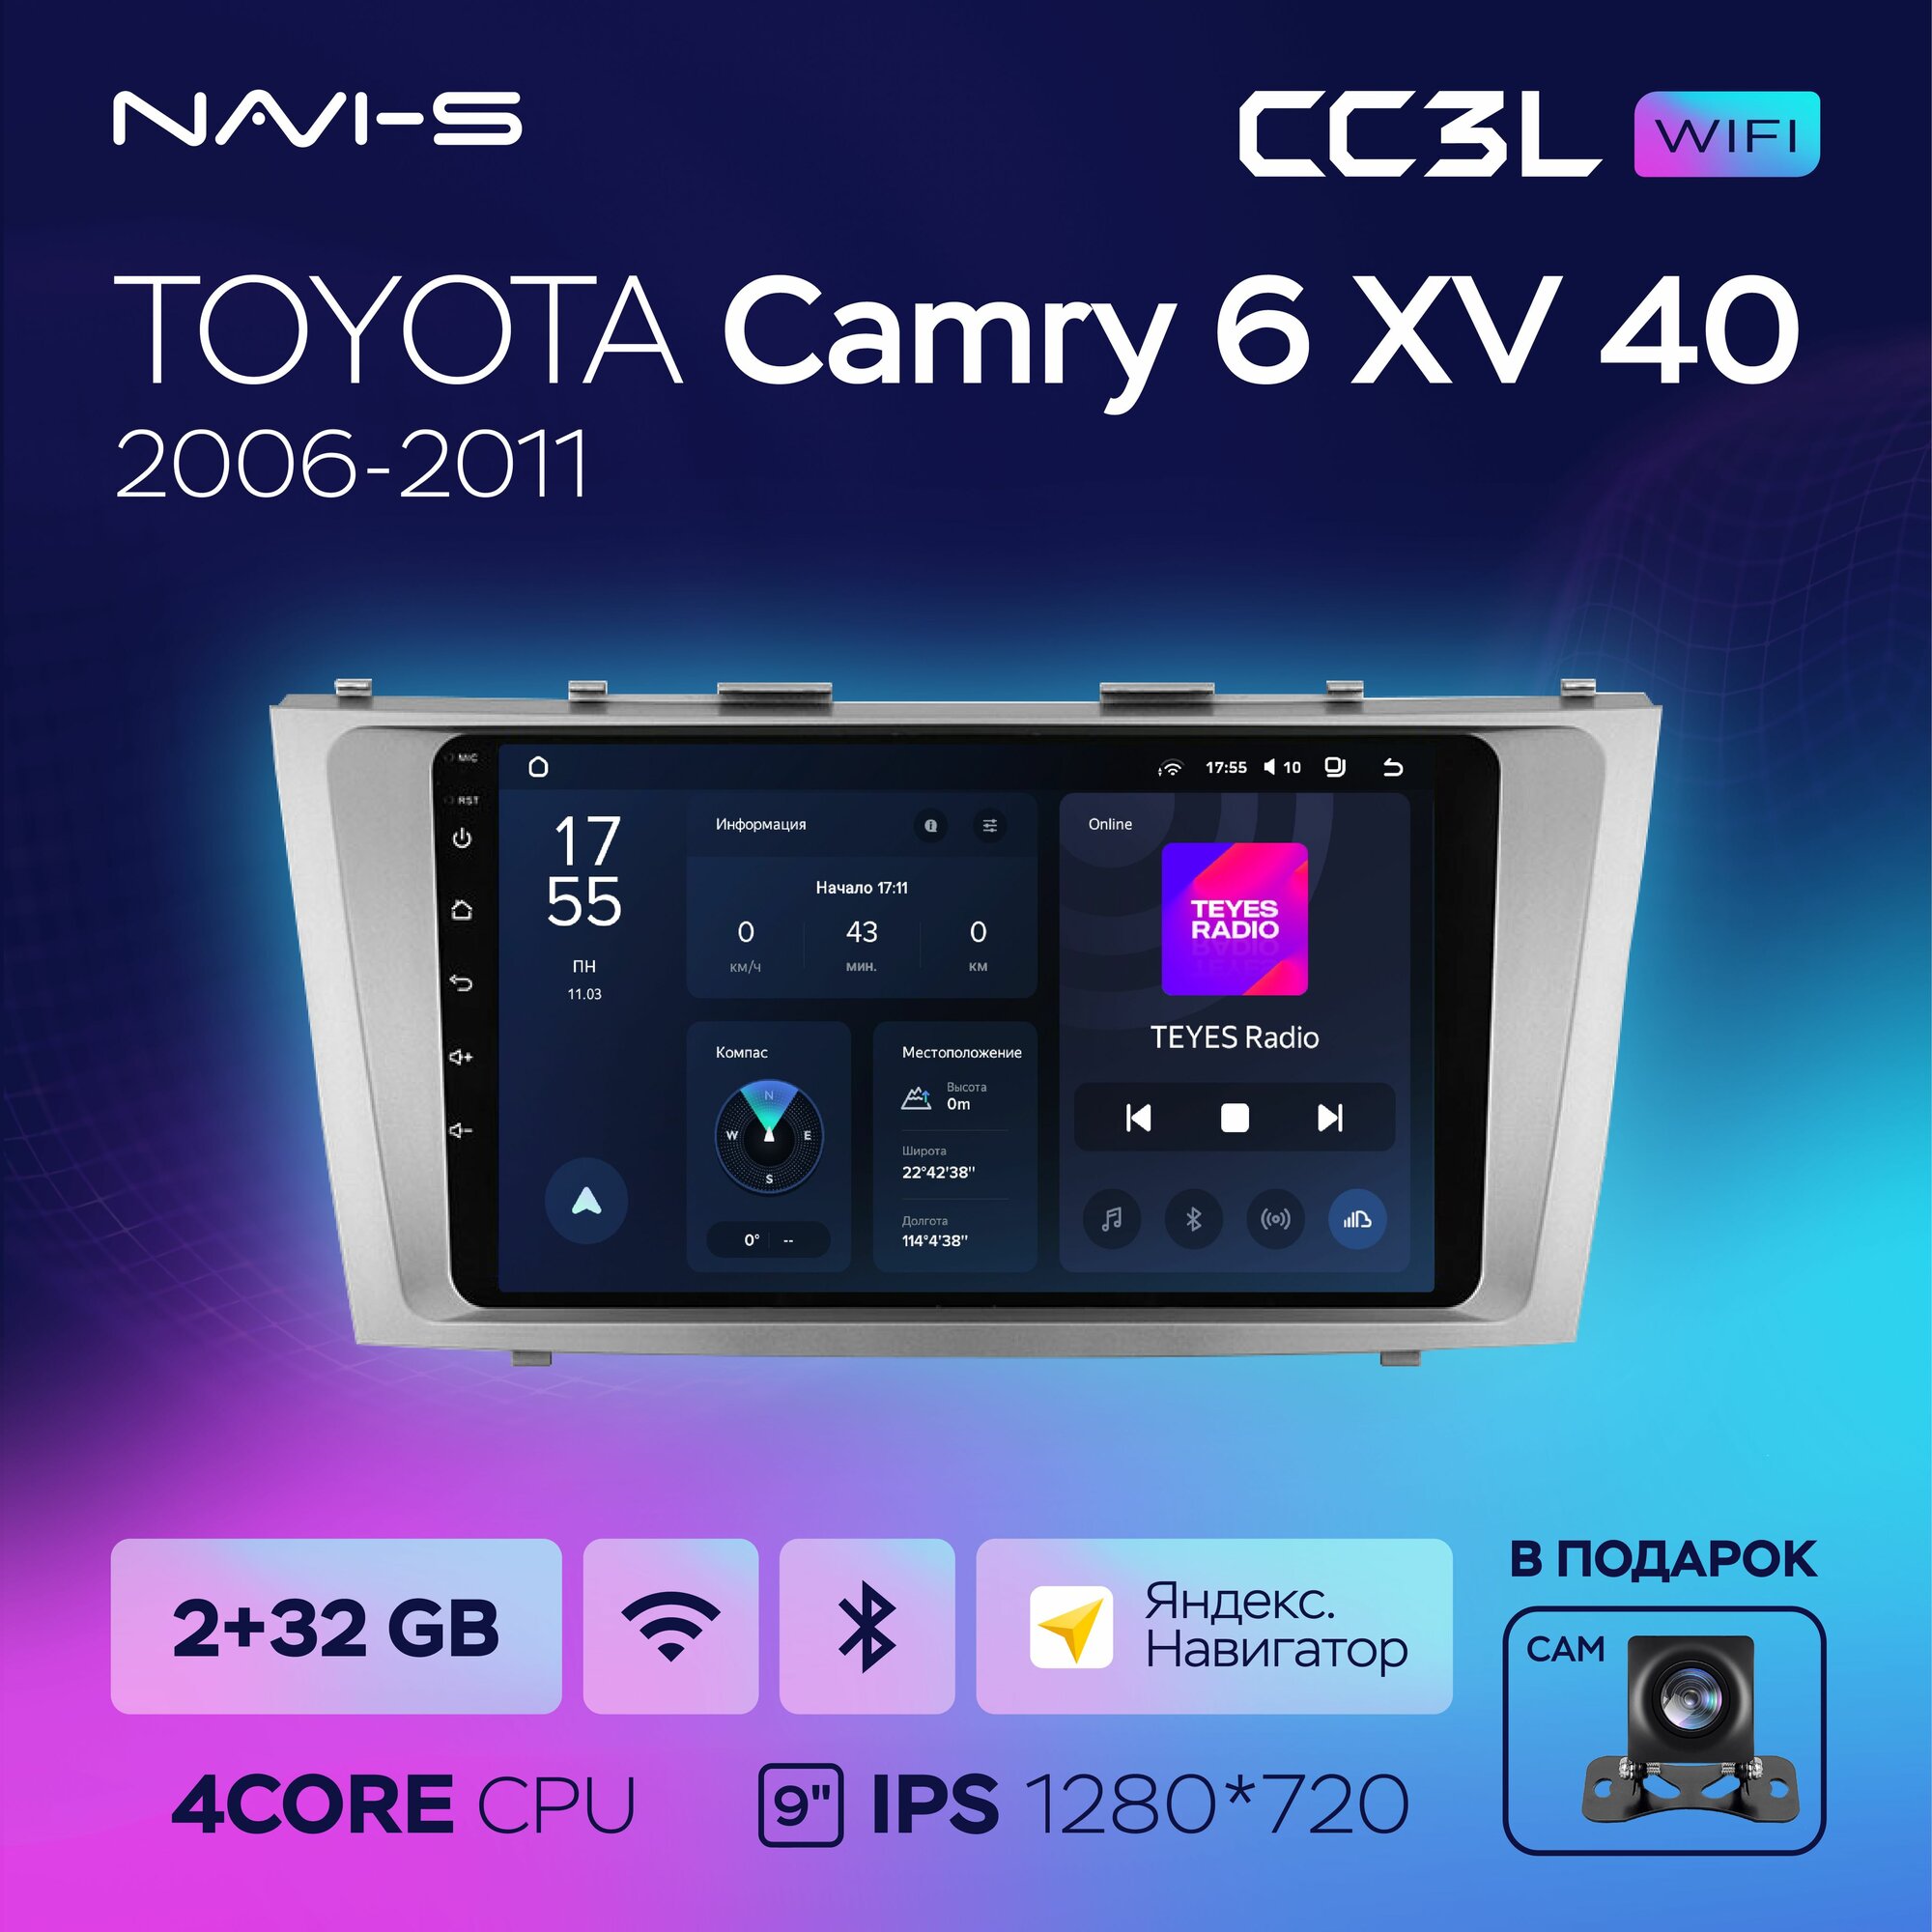 Автомагнитола Teyes CC3L Wi-Fi 2/32GB для Toyota Camry 6 XV 40 (Тойота Камри 6 ХВ 40) 2006 - 2011